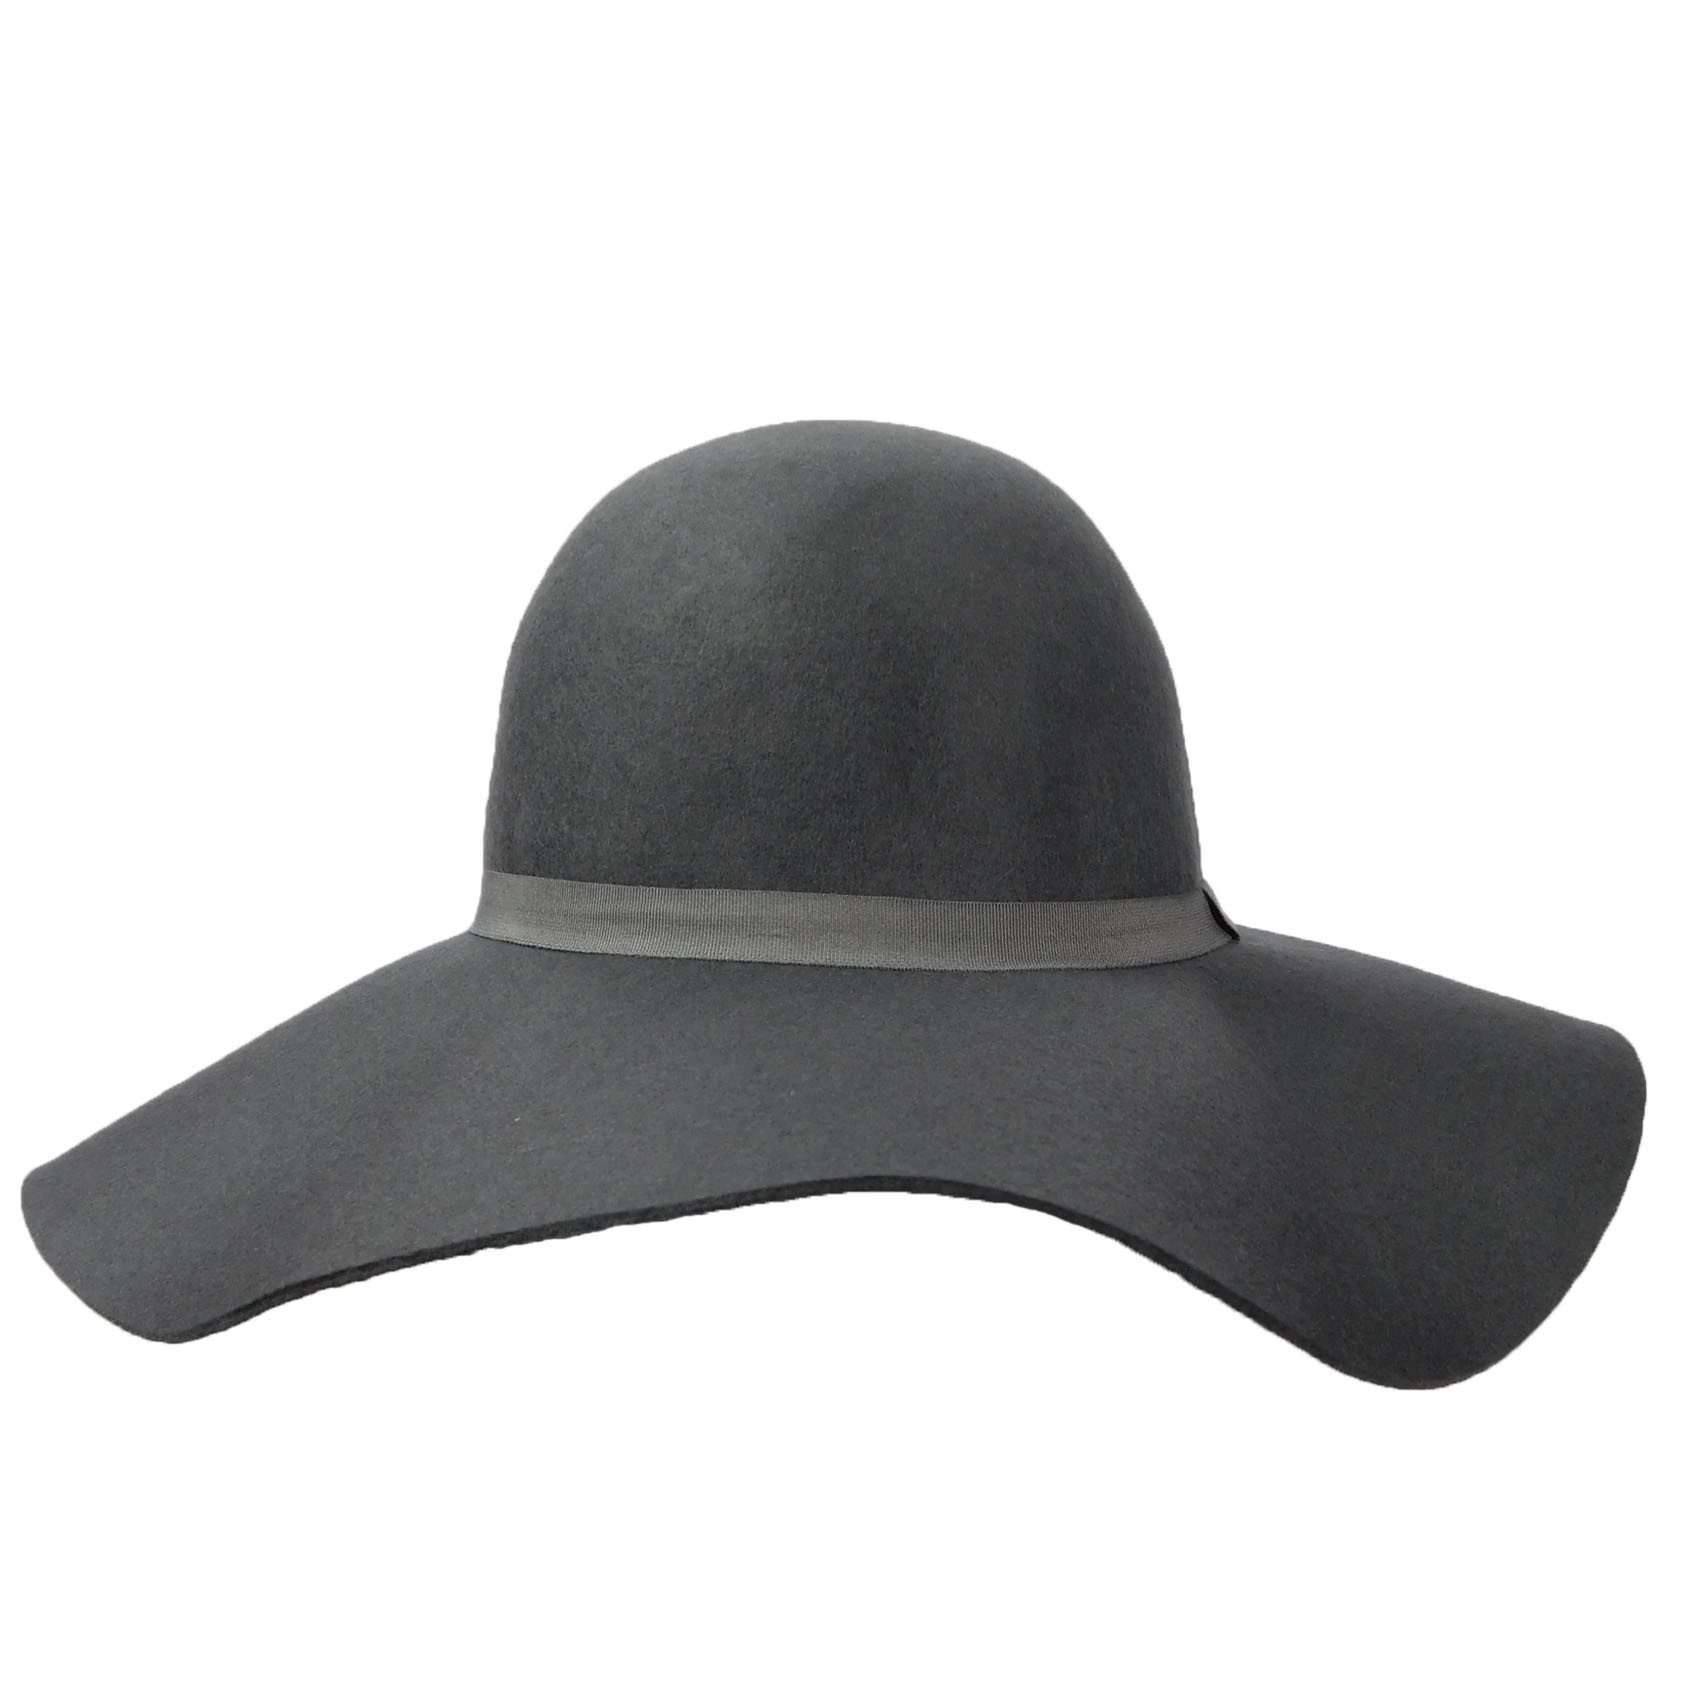 Wool Felt Wide Brim Hat for Women Light Grey / Medium (57 cm)